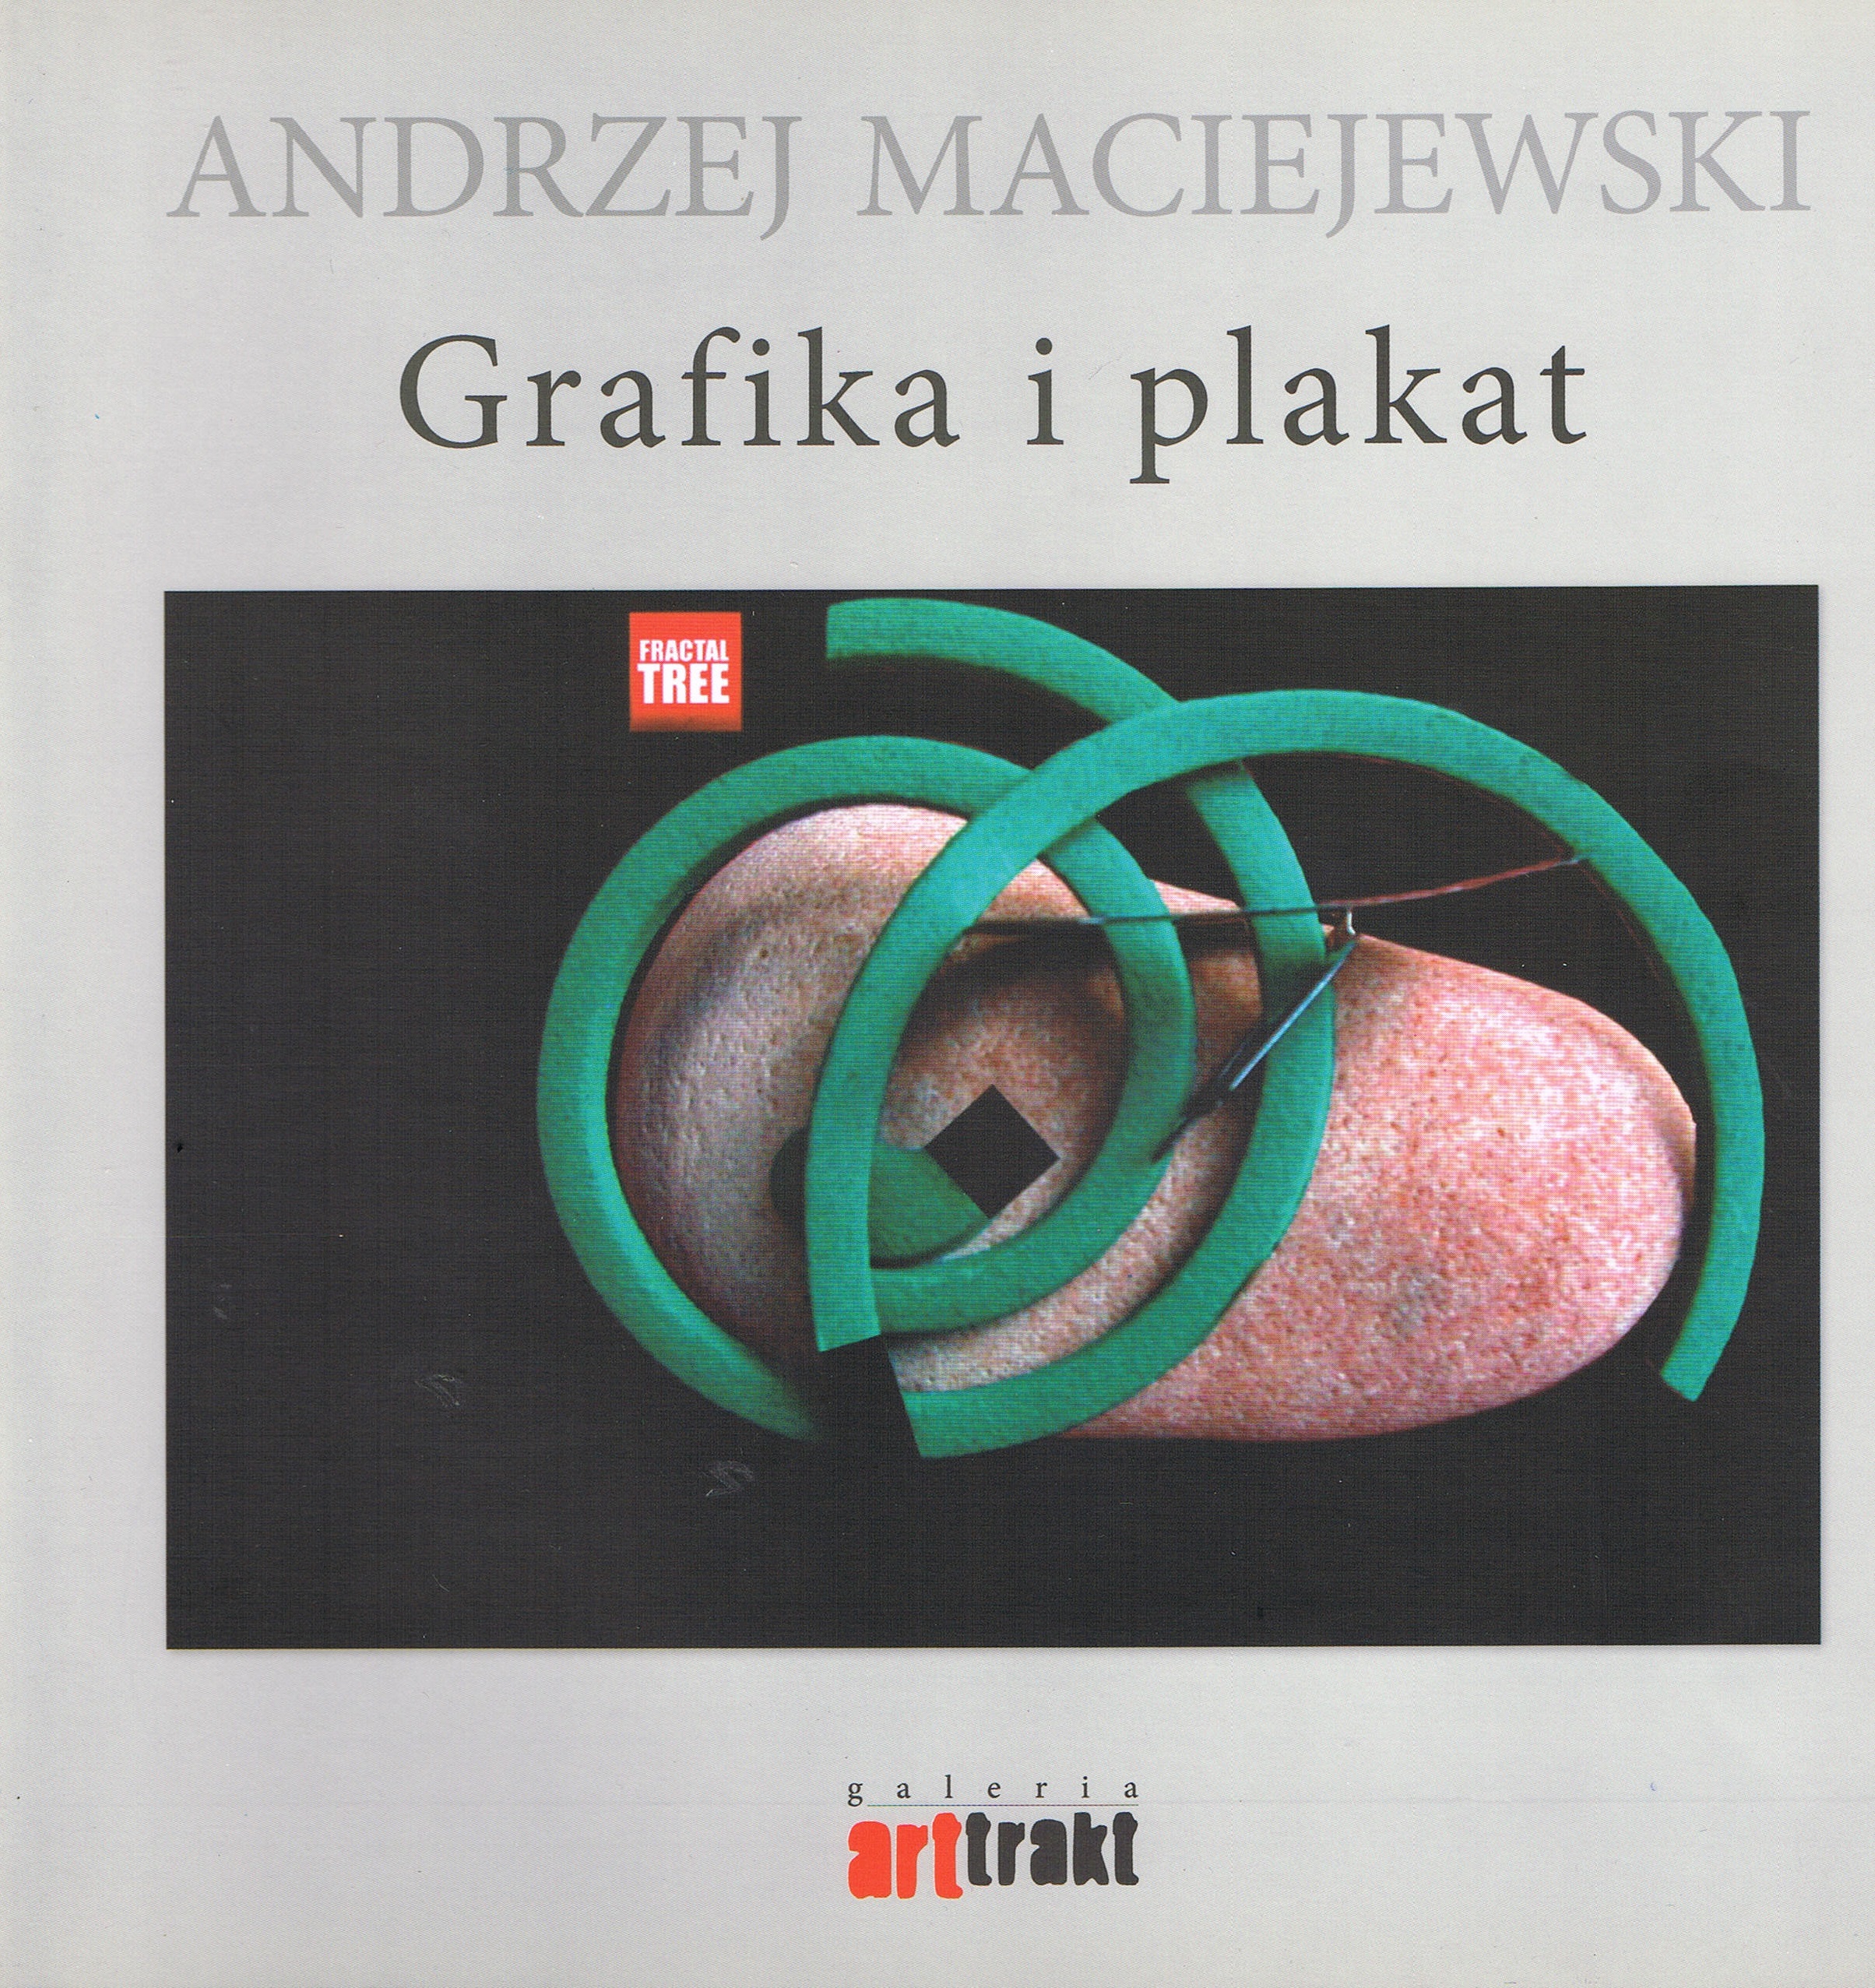 Katalog Andrzej Maciejewski